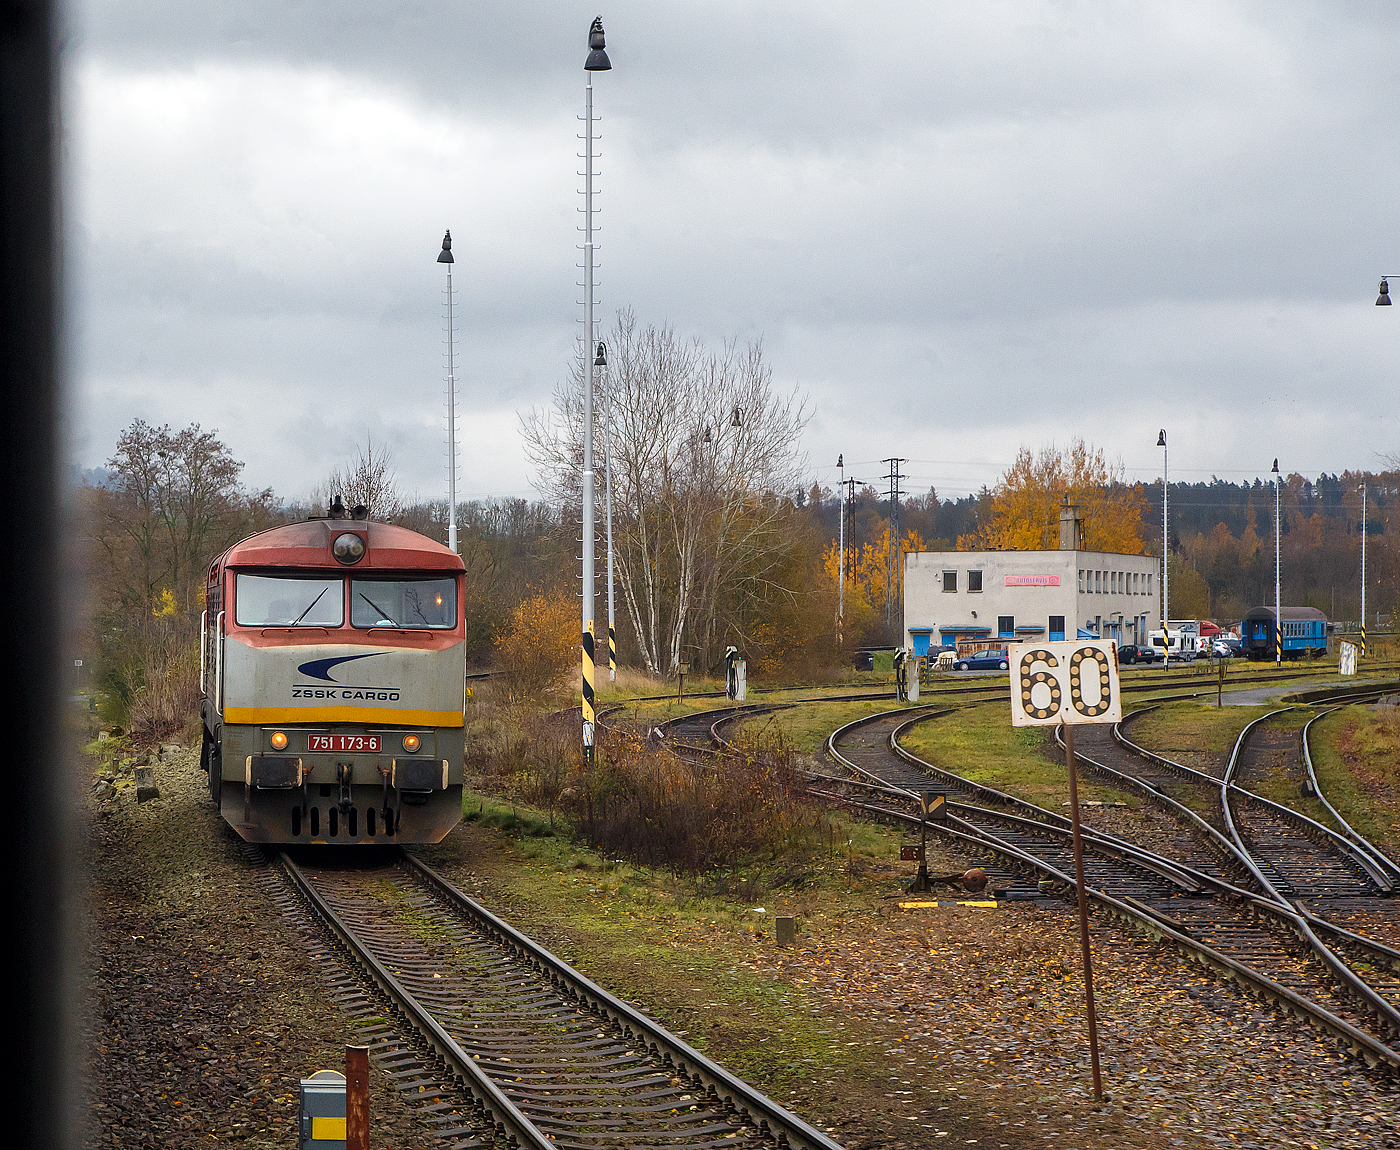 Wir erreichen am 24.11.2022 mit dem EC 360 / Ex 6 (Praha – Plzeň - Furth i.W. - Schwandorf – Regensburg – Mnchen) nun den Bahnhof Domalice (Taus) an der „Bhmische Westbahn“ Bahnstrecke Plzeň–Furth im Wald (SDC 180), whrend rechts die ZSSK Cargo 751 173-6 als Lz ber die Bahnstrecke Janovice nad hlavou–Domalice (SDC 185) ankommt.  

Die Kursbuchstrecke SDC 185 von Janovice nad hlavou nach Domalice (deutsch Janowitz an der Angel – Taus) ist Teil der ehemaligen Bhmisch-Mhrische Transversalbahn der ehemaligen k.k. sterreichischen Staatsbahn (kkStB), sie verlief von der damaligen ungarischen Grenze am Vlarapass bei Uhersk Hraditě (Hradisch) nach Domalice (Taus) und hatte dort Anschluss an bayerische Strecken.

Die ZSSK Cargo 751 173-6, ex ČSD-Baureihe T 478.1, ist eine dieselelektrische Universallokomotive der ehemaligen Tschechoslowakischen Staatsbahnen (ČSD). Die Lokomotiven prgten ab den 1960er Jahren den Streckendienst auf nichtelektrifizierten Strecken der ČSD und galten auf Grund ihrer Zuverlssigkeit als eine der erfolgreichsten Diesellokomotiven in der ehemaligen Tschechoslowakei. Unter Eisenbahnfreunden erfreuten sich die Maschinen, die auf Grund ihres markanten ueren den Spitznamen Bardotka (abgeleitet von Brigitte Bardot) oder Zamračen (Finstergesicht) erhielten. Zwischen 1966 und 1977 wurden von ČKD Praha 230 Loks als T 478.1 und 82 Loks als T 478.2 gebaut.
